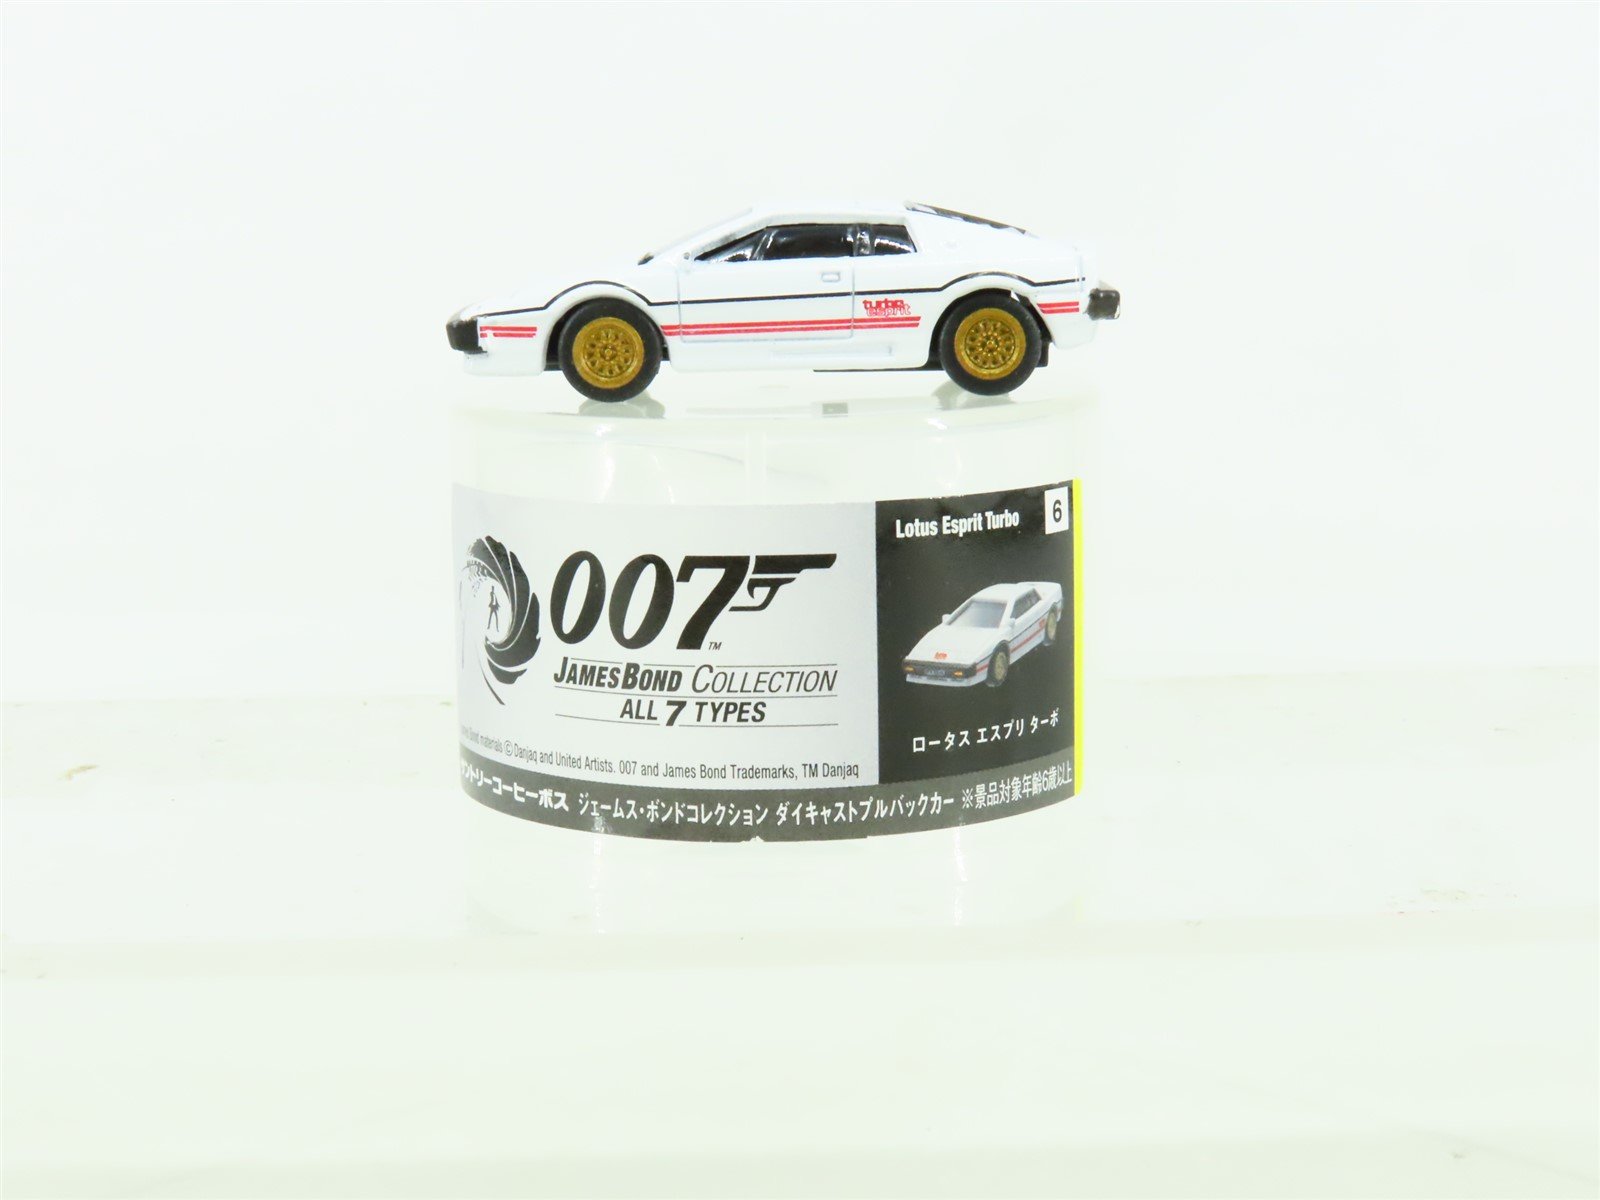 Danjaq Die-Cast Automobile 007 James Bond Collection Lotus Esprit Turbo